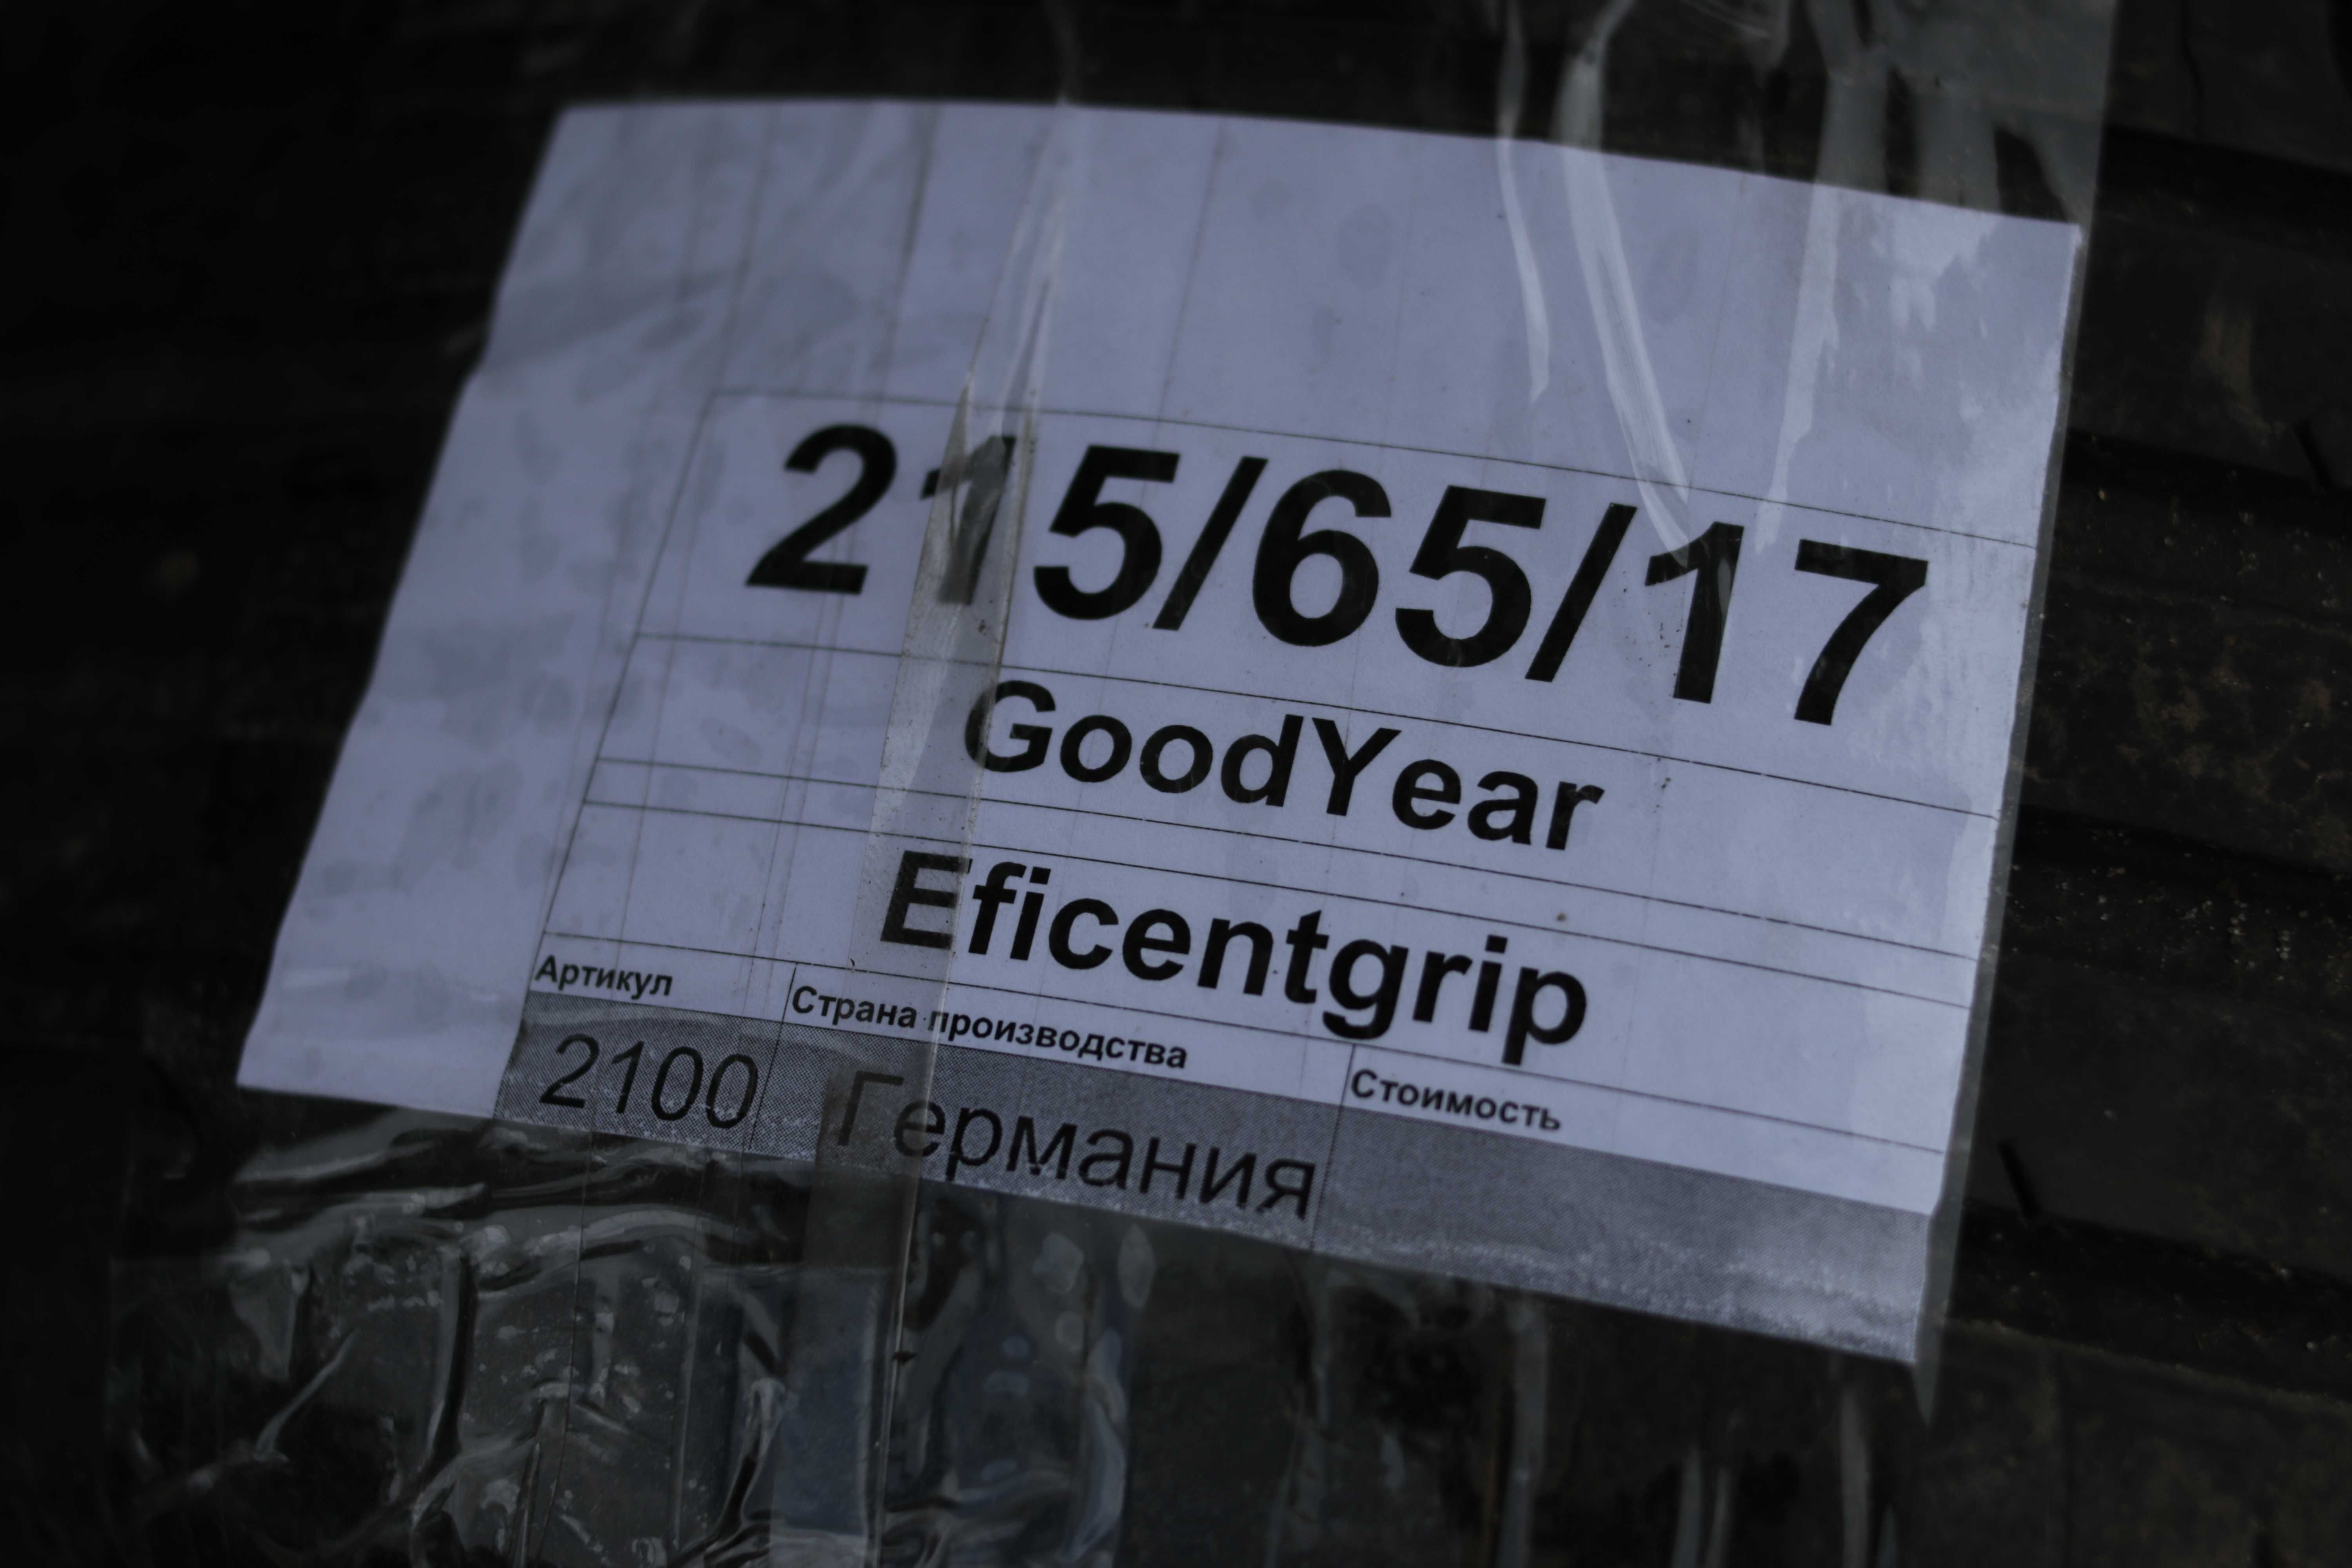 GoodYear Eficentgrip 215/65/R17 Лето Пара